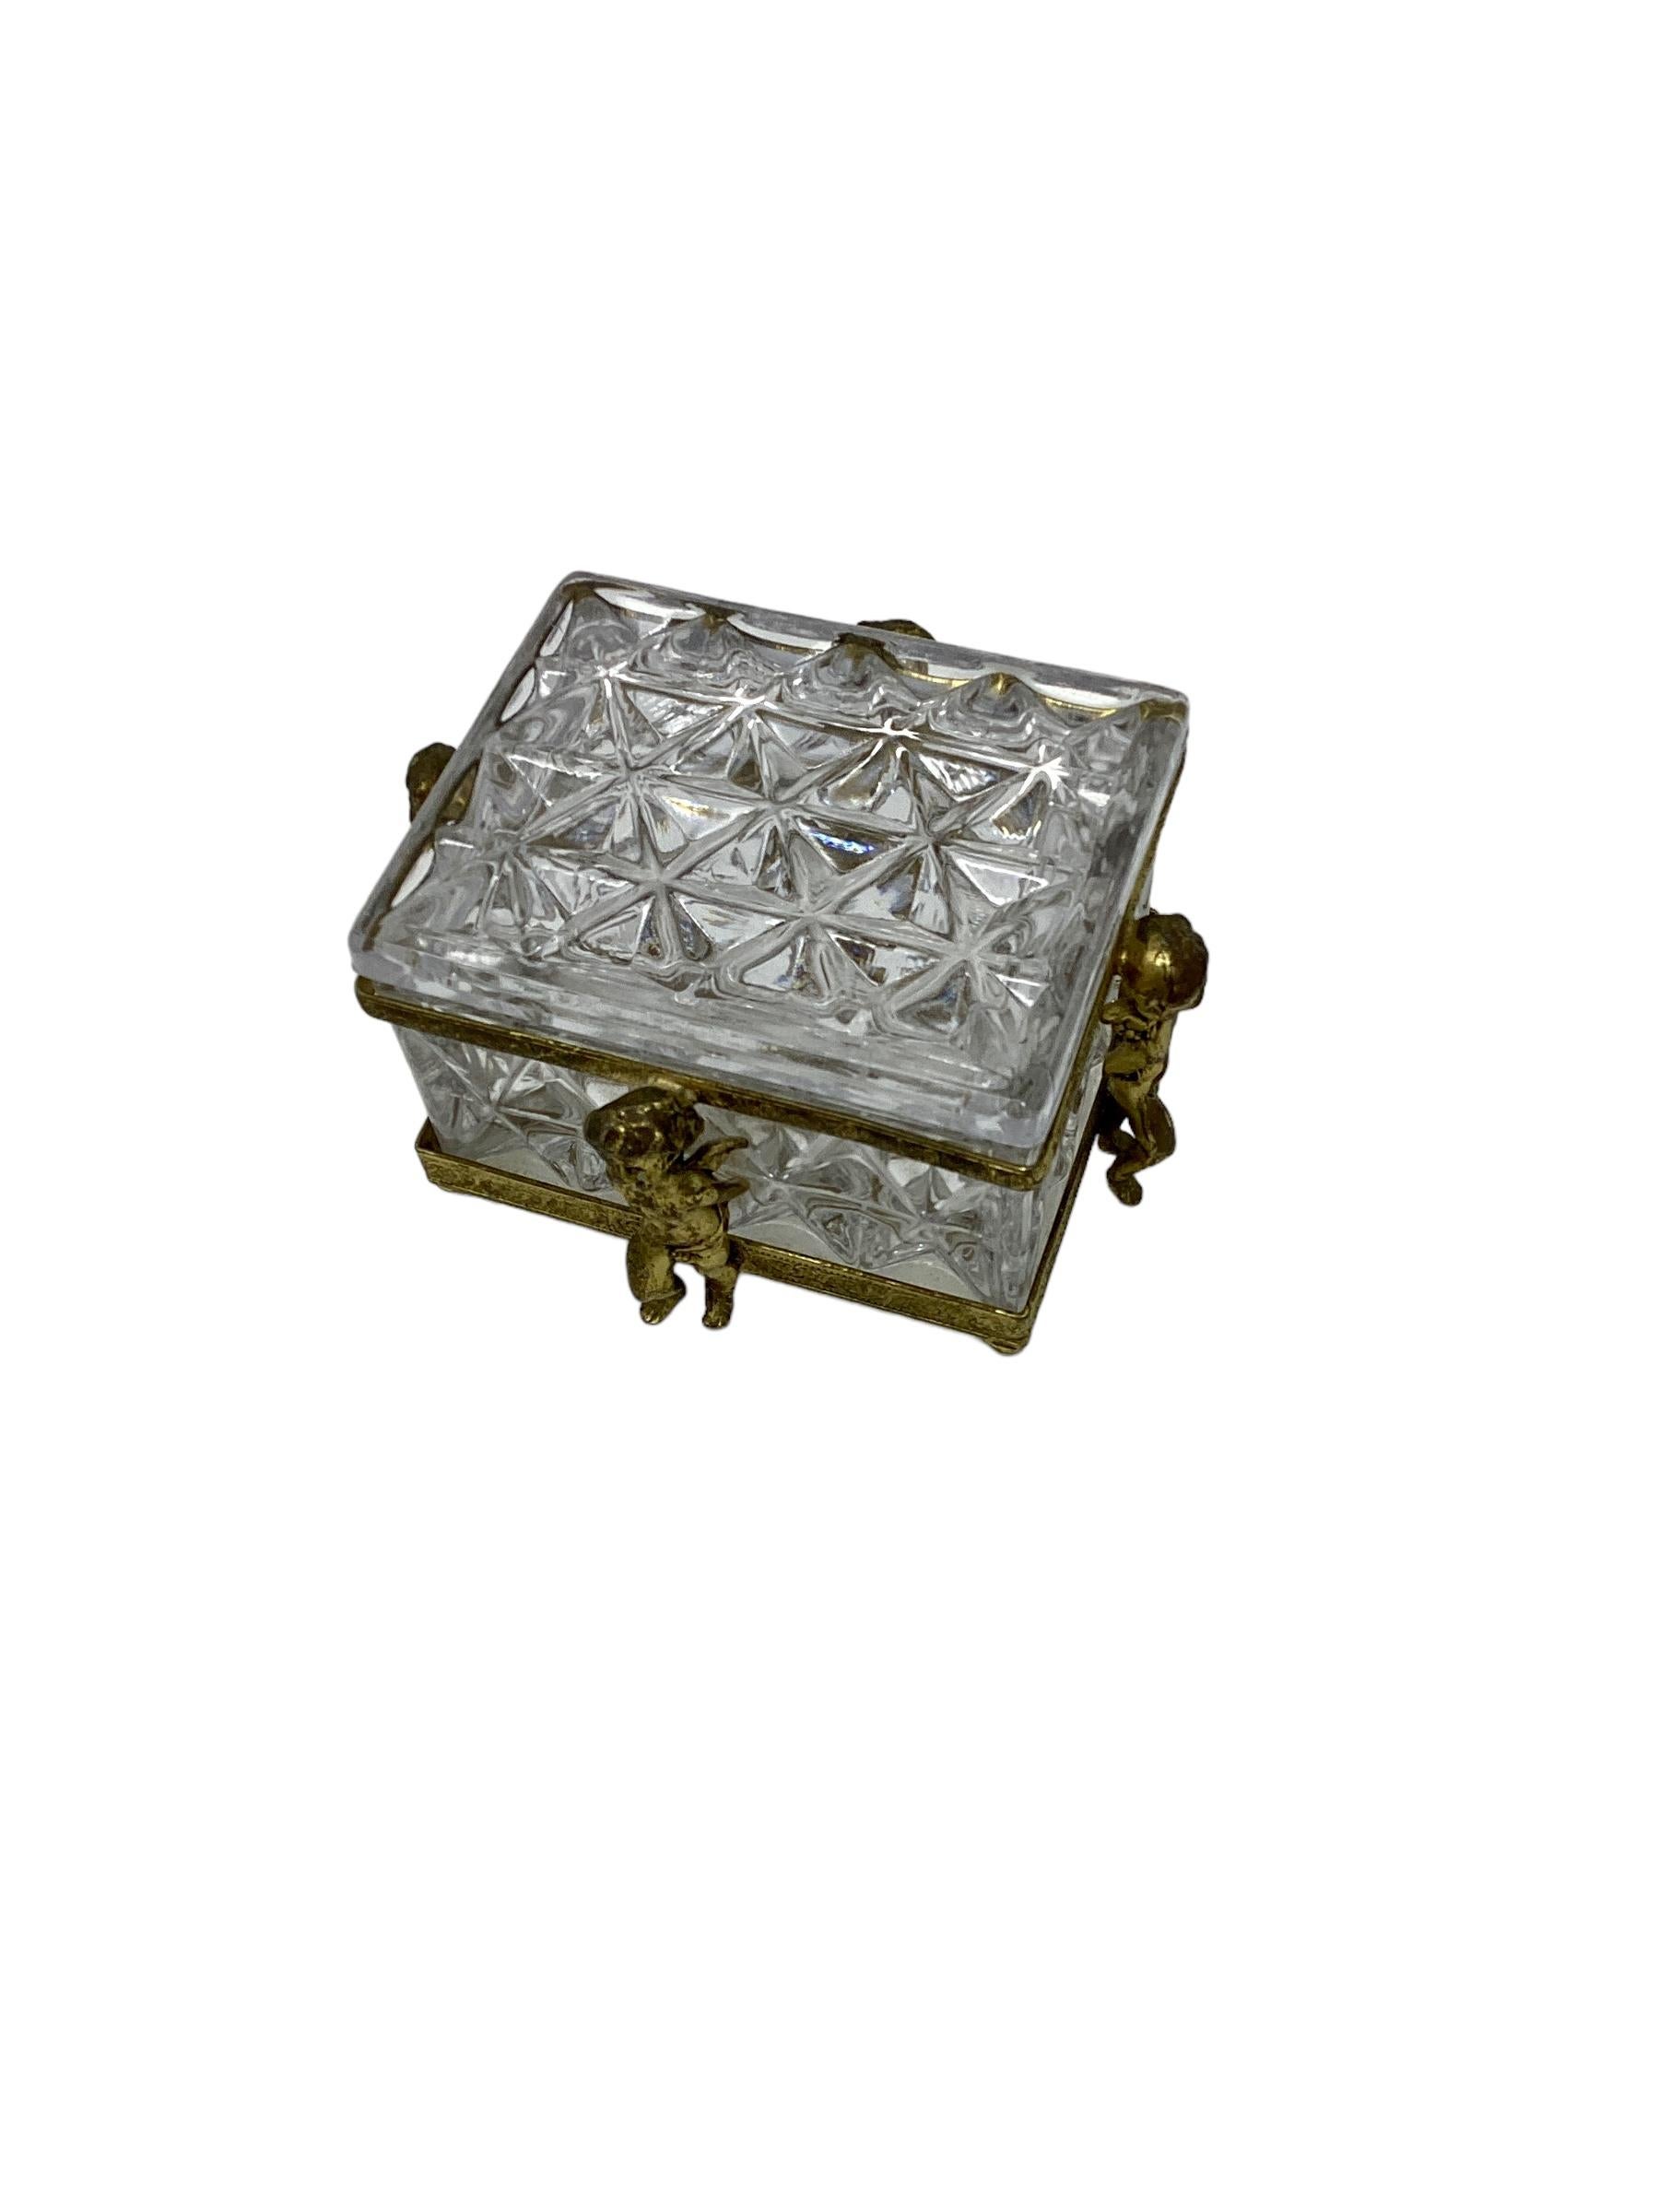 Bronze Antique puttis ailé en cristal recouvert en vente